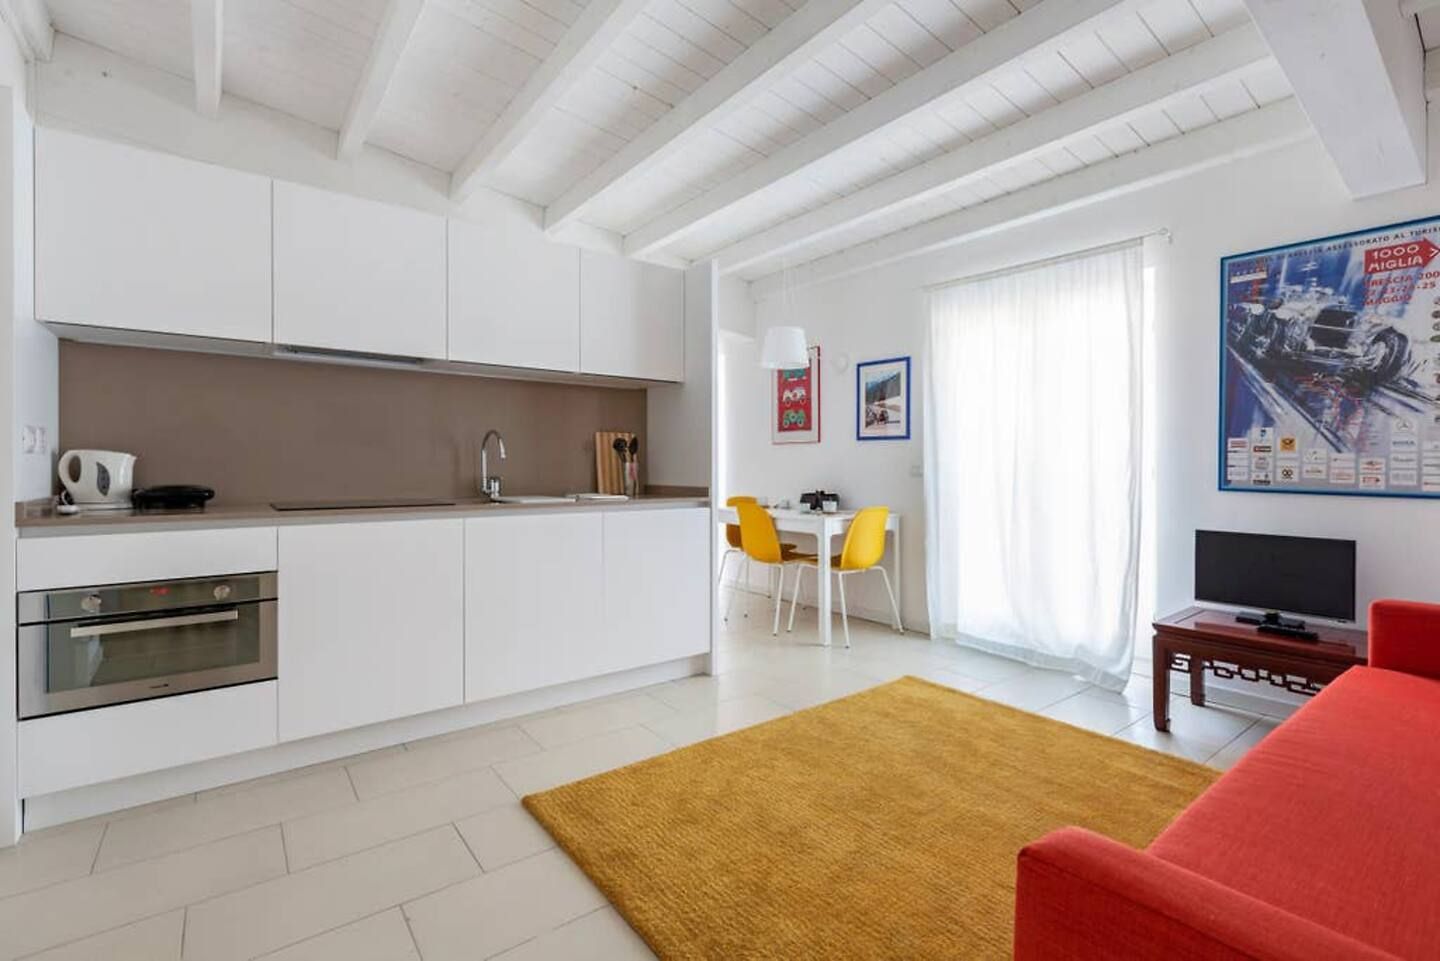 FF - Piccolo appartamento 50 m2 - B&B, Filippo Zuliani Architetto Filippo Zuliani Architetto Salones modernos Cerámico